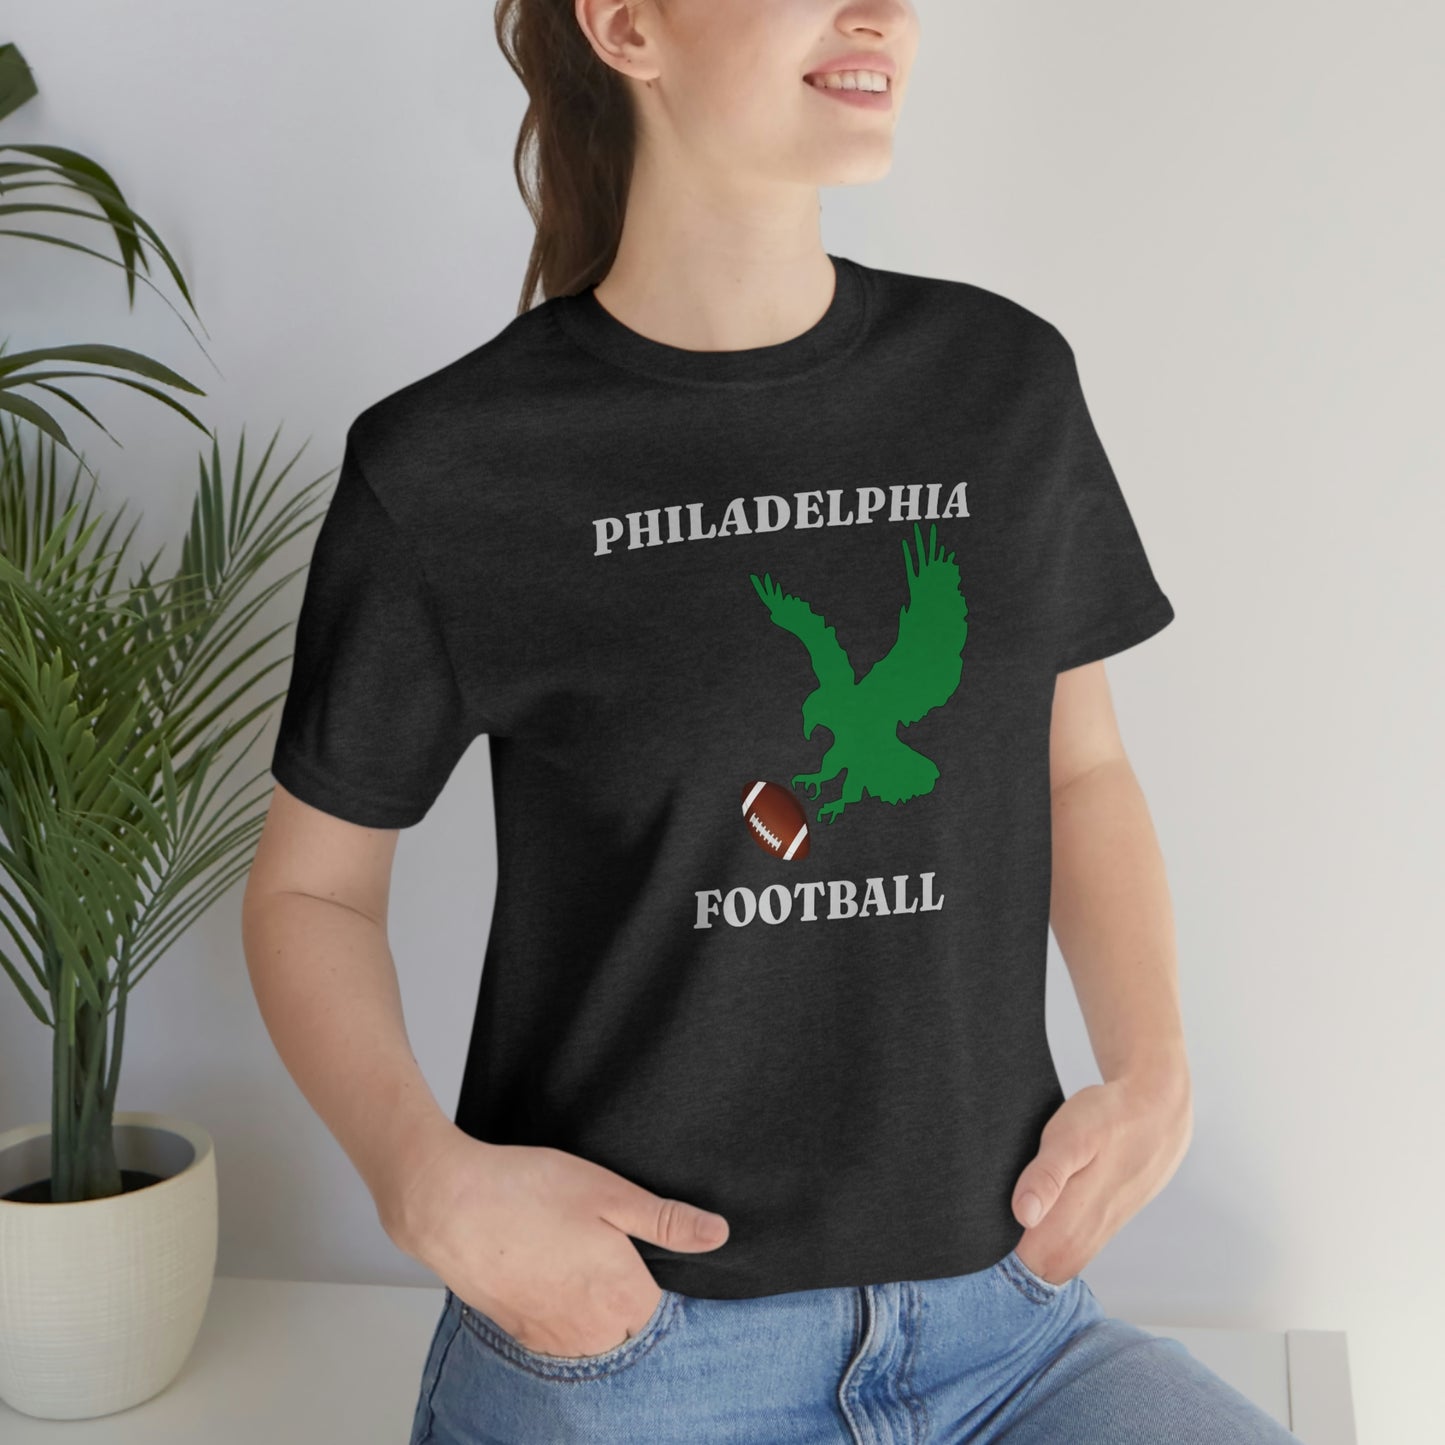 Unisex Jersey Short Sleeve Tee: Philly Football